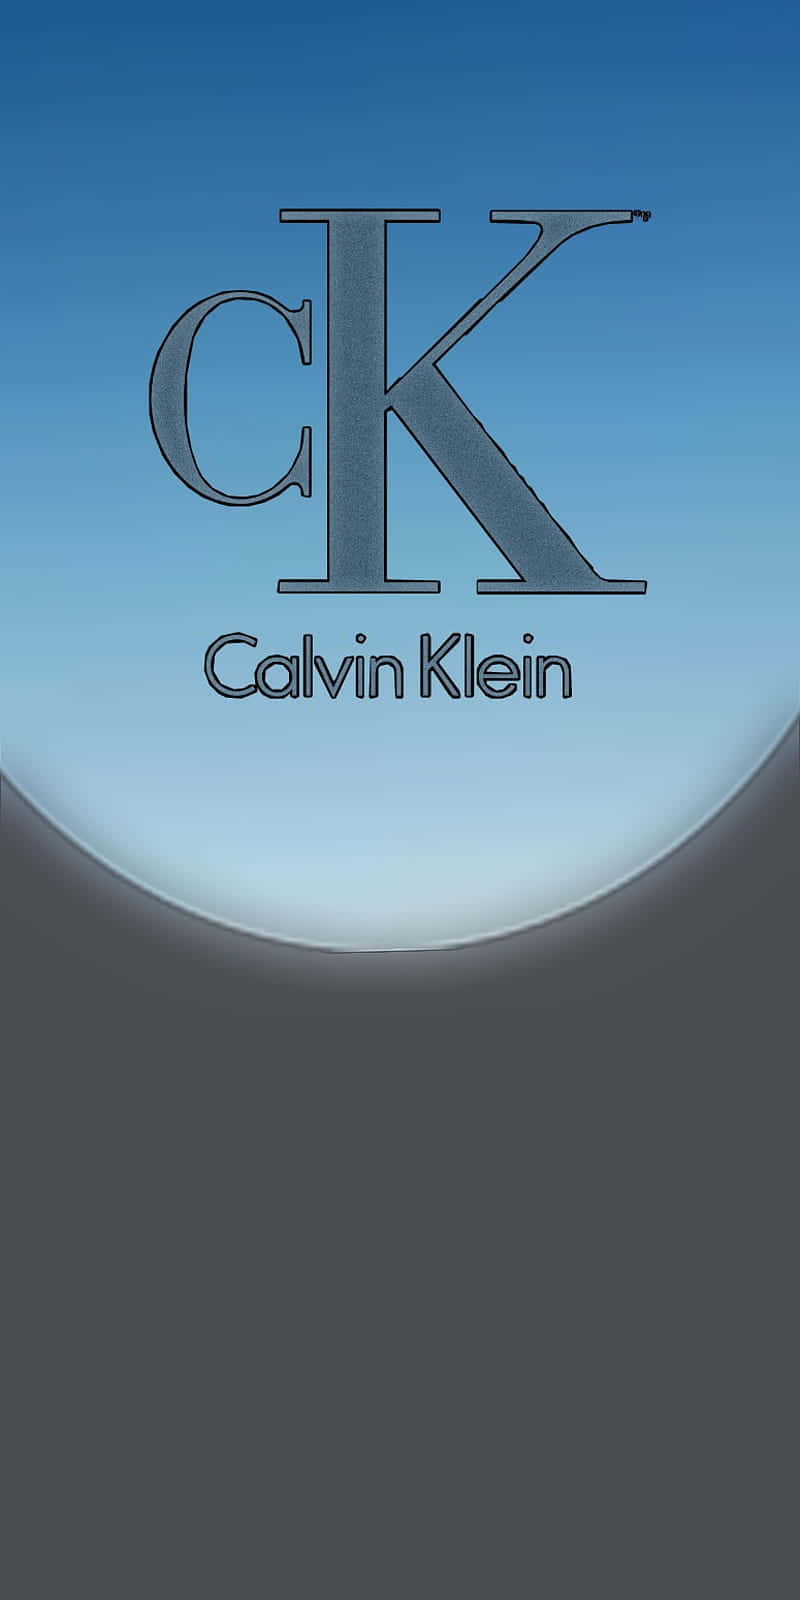 Muestratu Lado Audaz Y Elegante Con Calvin Klein.